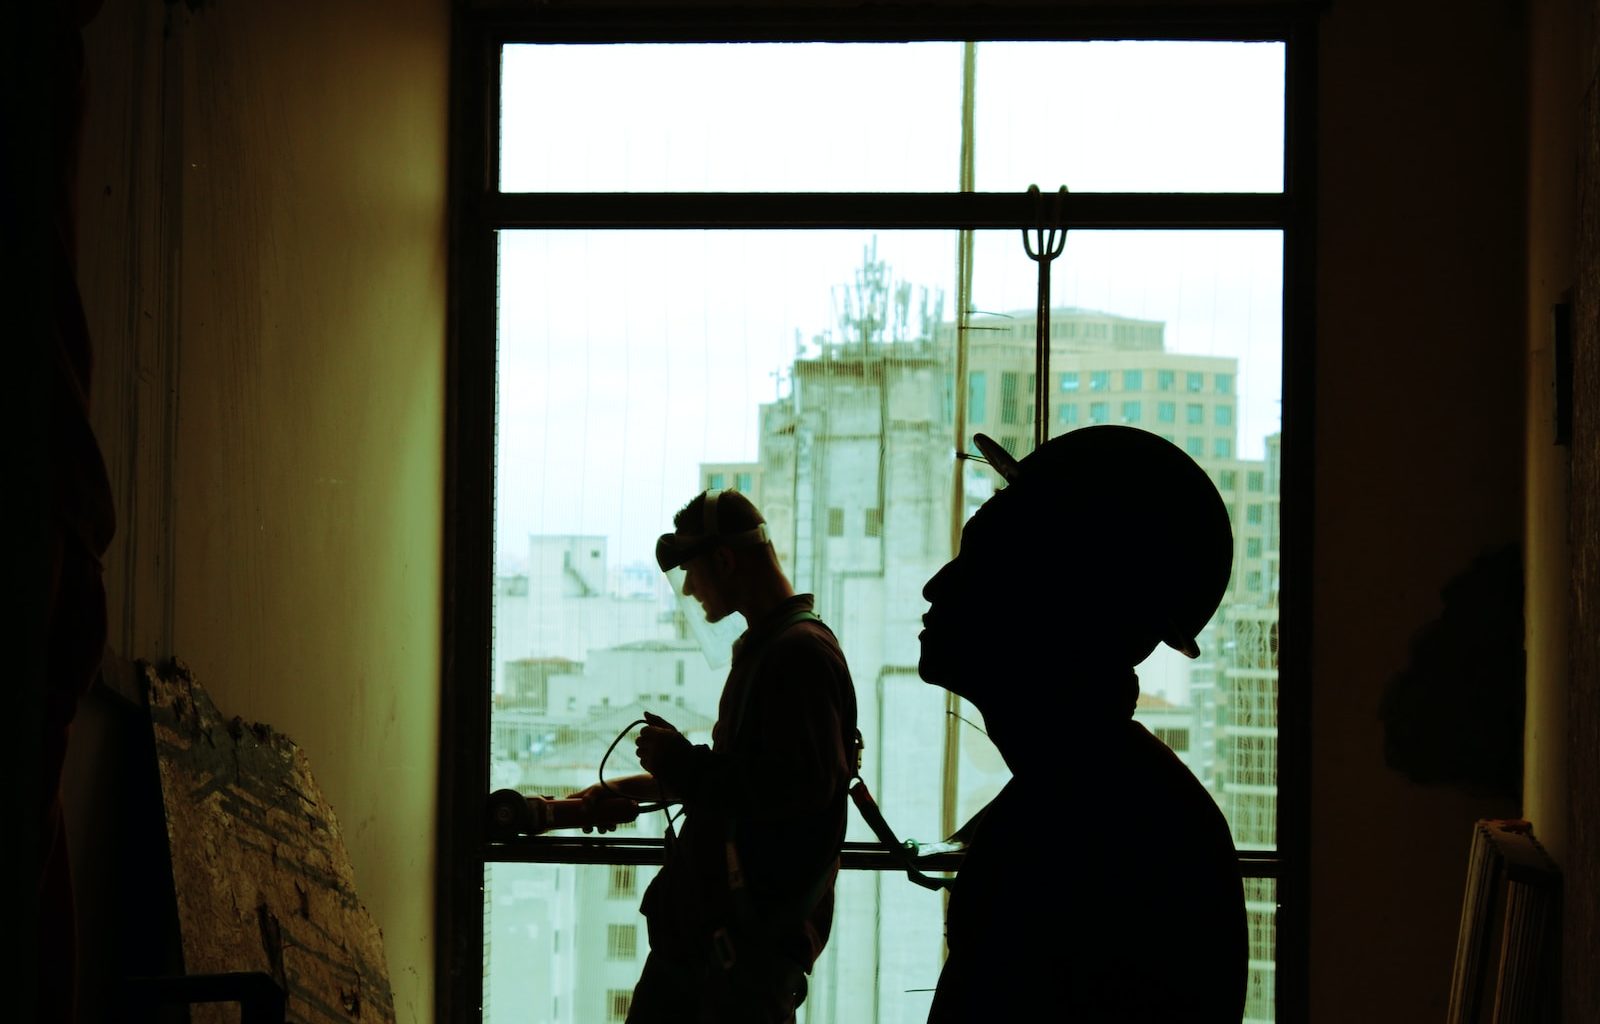 two men wearing hard hat standing near clear glass window